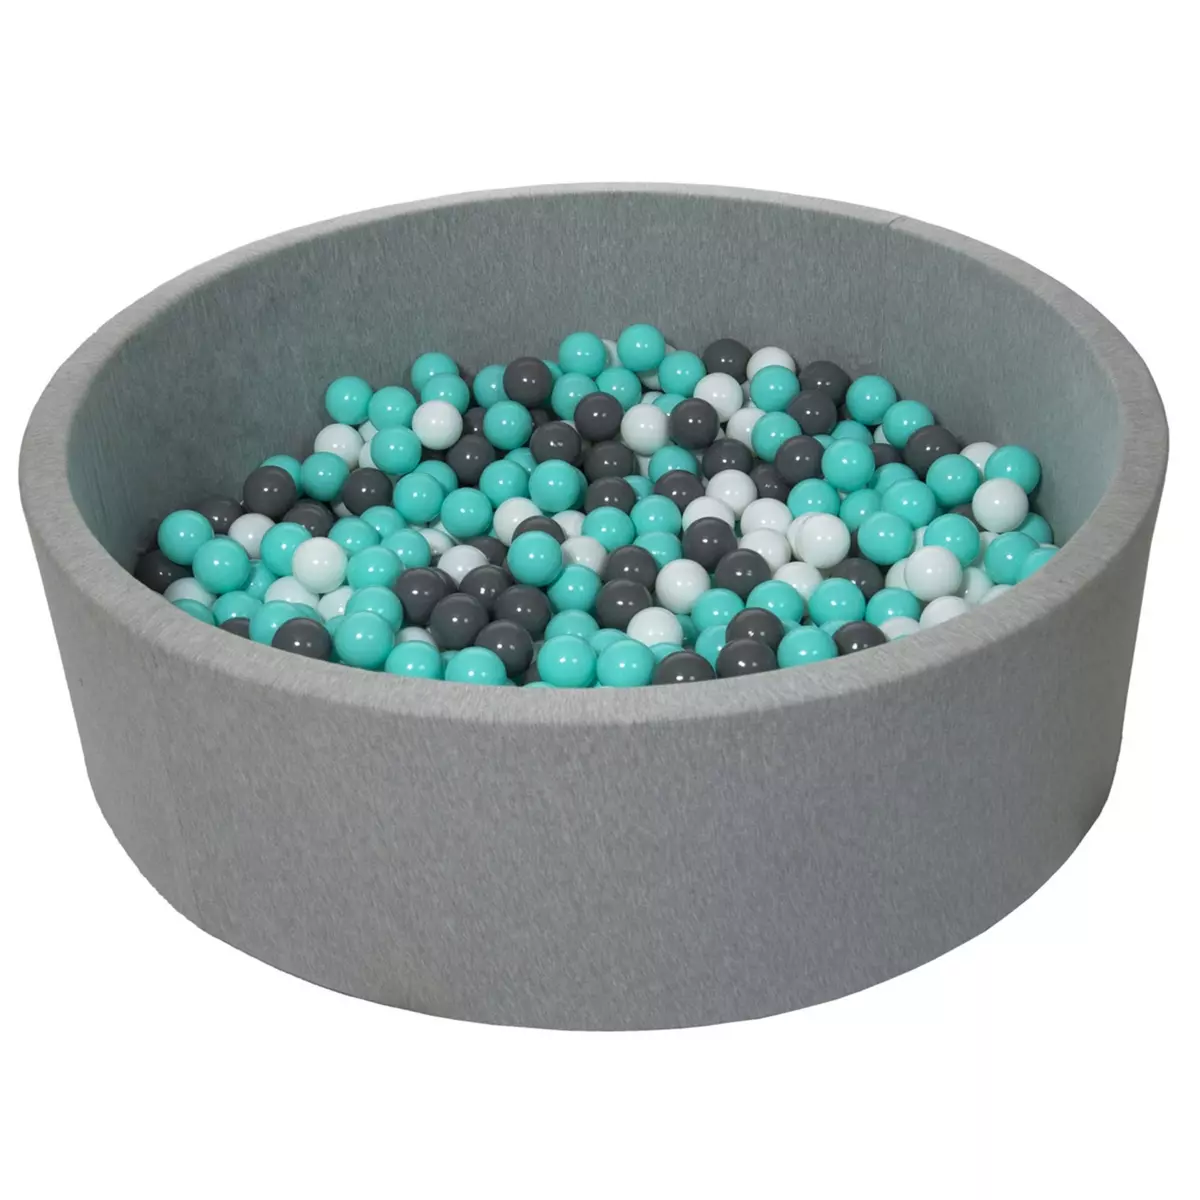  Piscine à balles pour enfant, diamètre env.125 cm, Aire de jeu + 600 balles, gris, turquoise